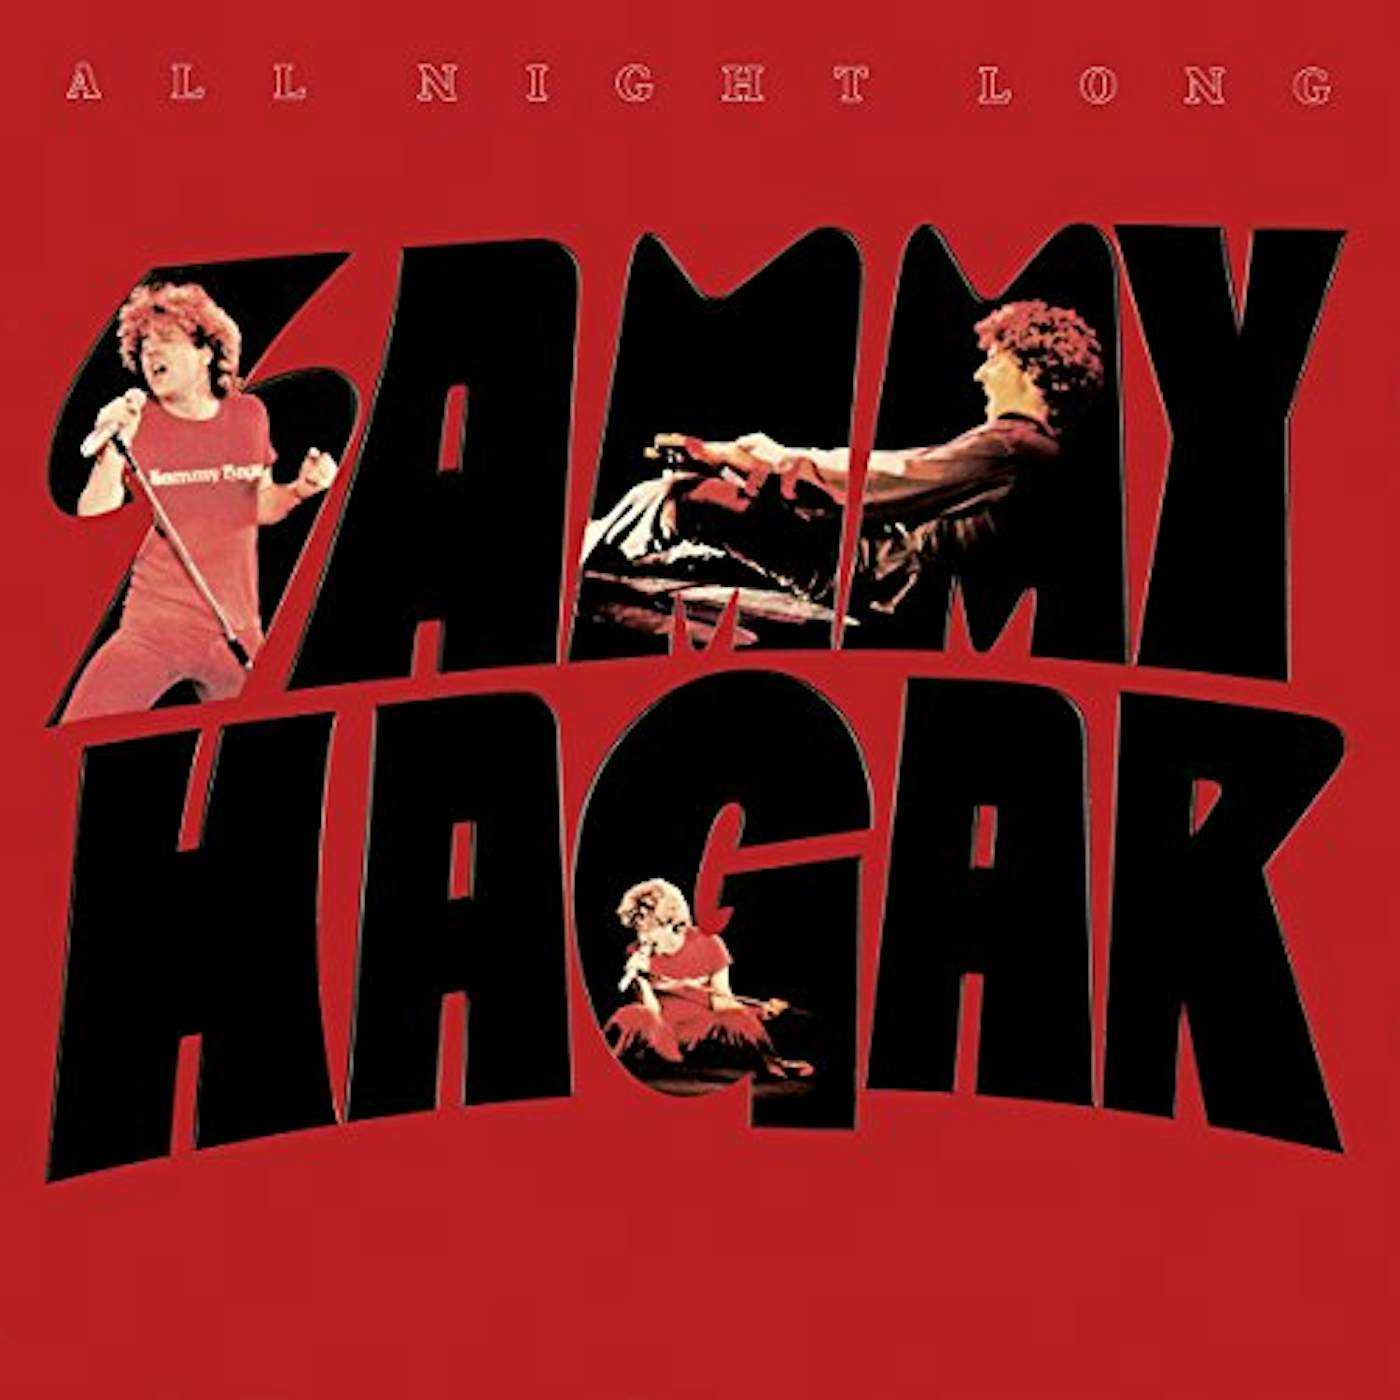 Sammy Hagar ALL NIGHT LONG CD